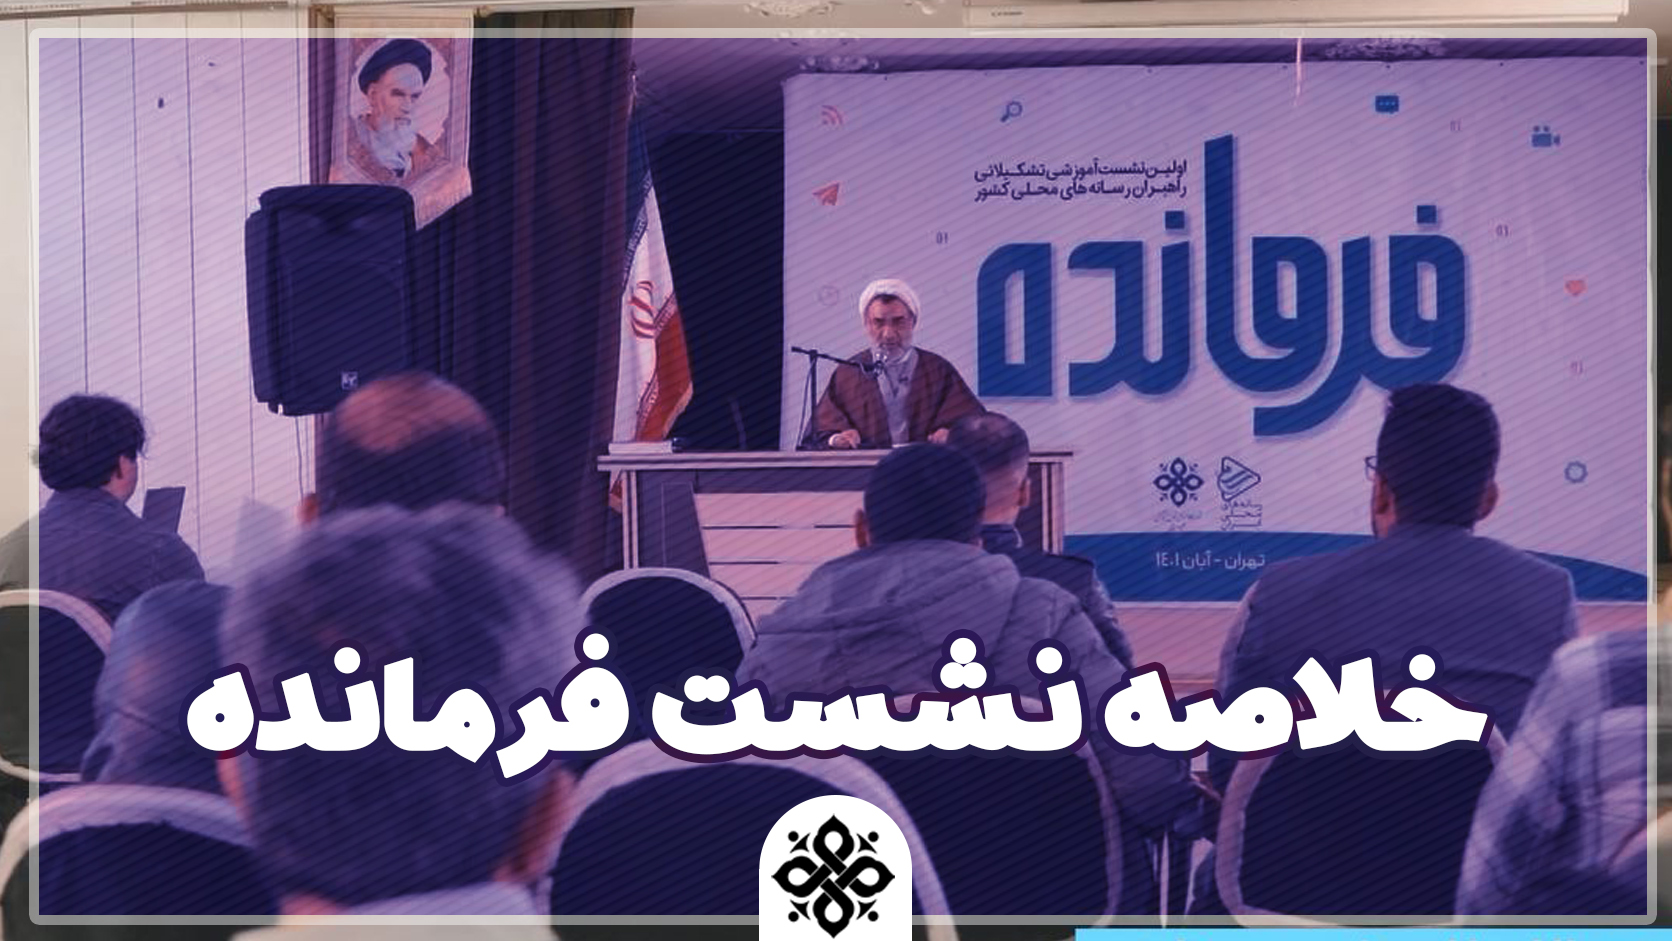 نشست فرمانده، اولین نشست راهبران رسانه های محلی ایران از چهارشنبه تا جمعه بیست و هفتم آبان ماه برگزار شد.